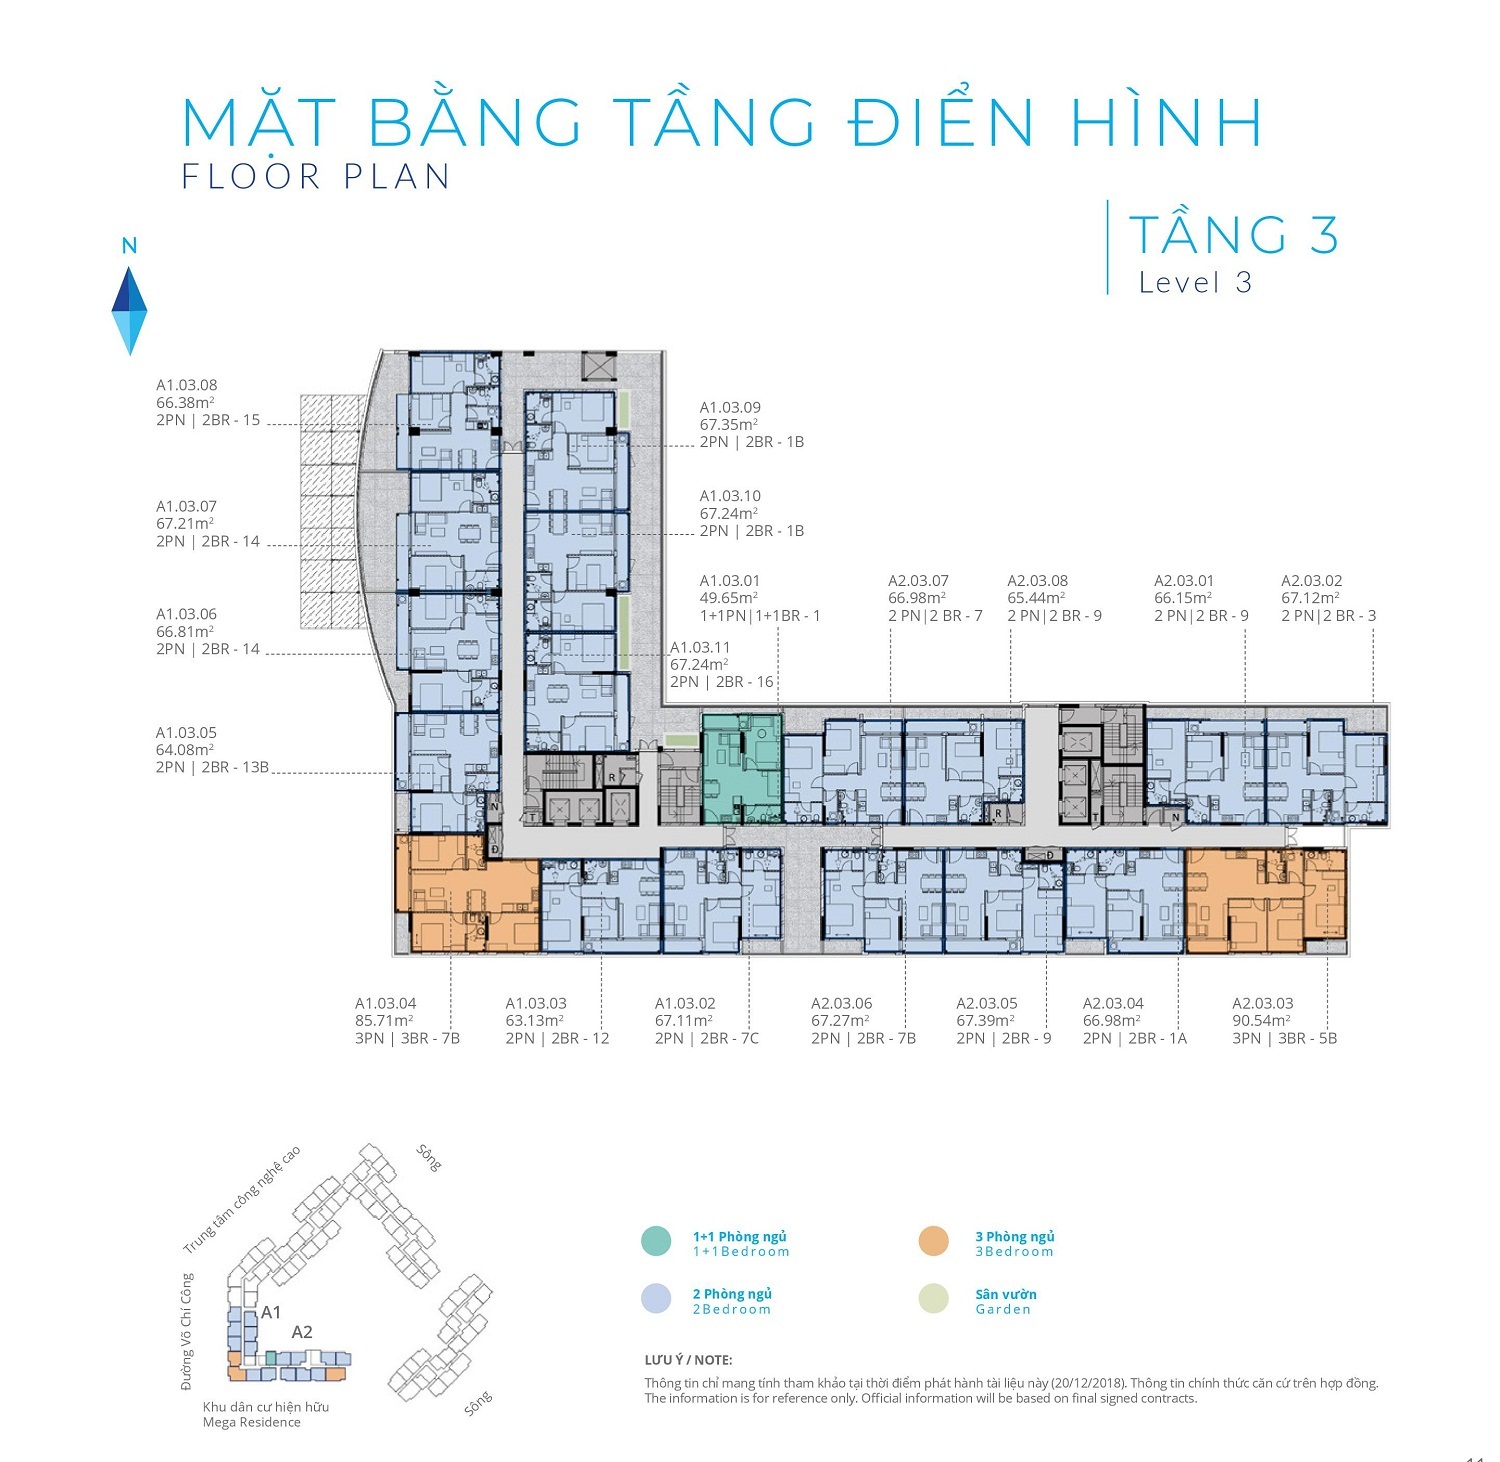 Mặt bằng tầng điển hình tầng 3 bố trí 19 căn hộ, 6 thang máy và 4 thang thoát hiểm - Khang Điền HCM